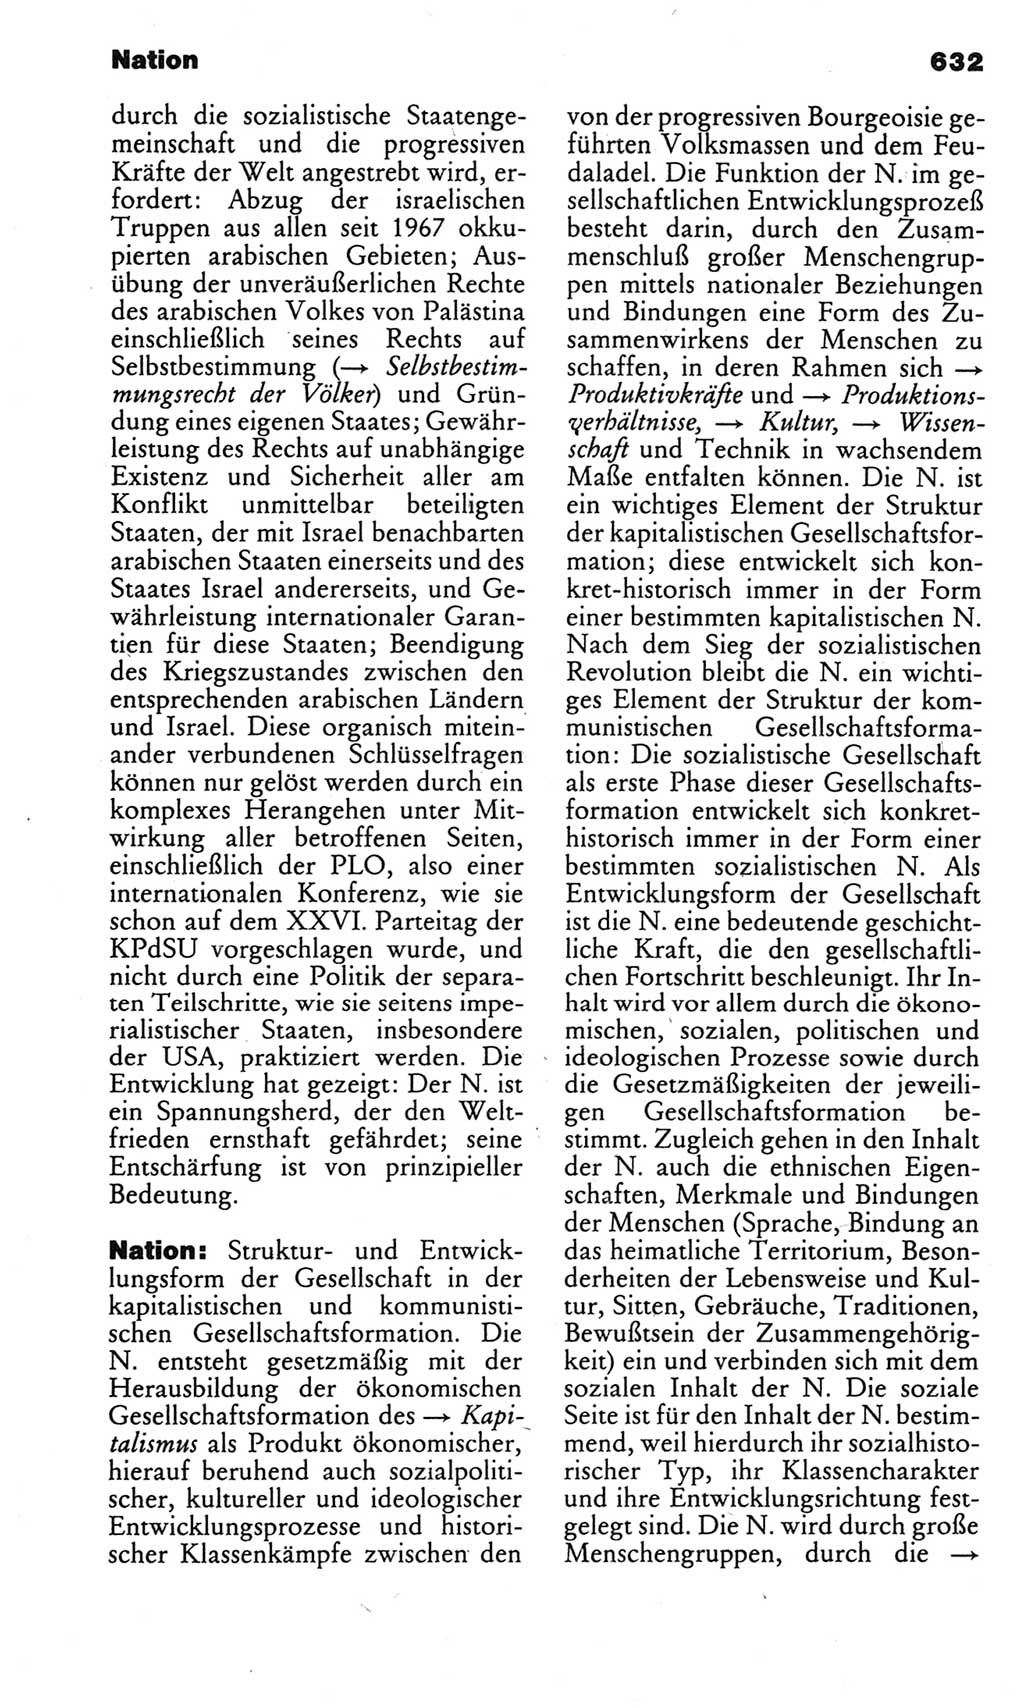 Kleines politisches Wörterbuch [Deutsche Demokratische Republik (DDR)] 1983, Seite 632 (Kl. pol. Wb. DDR 1983, S. 632)